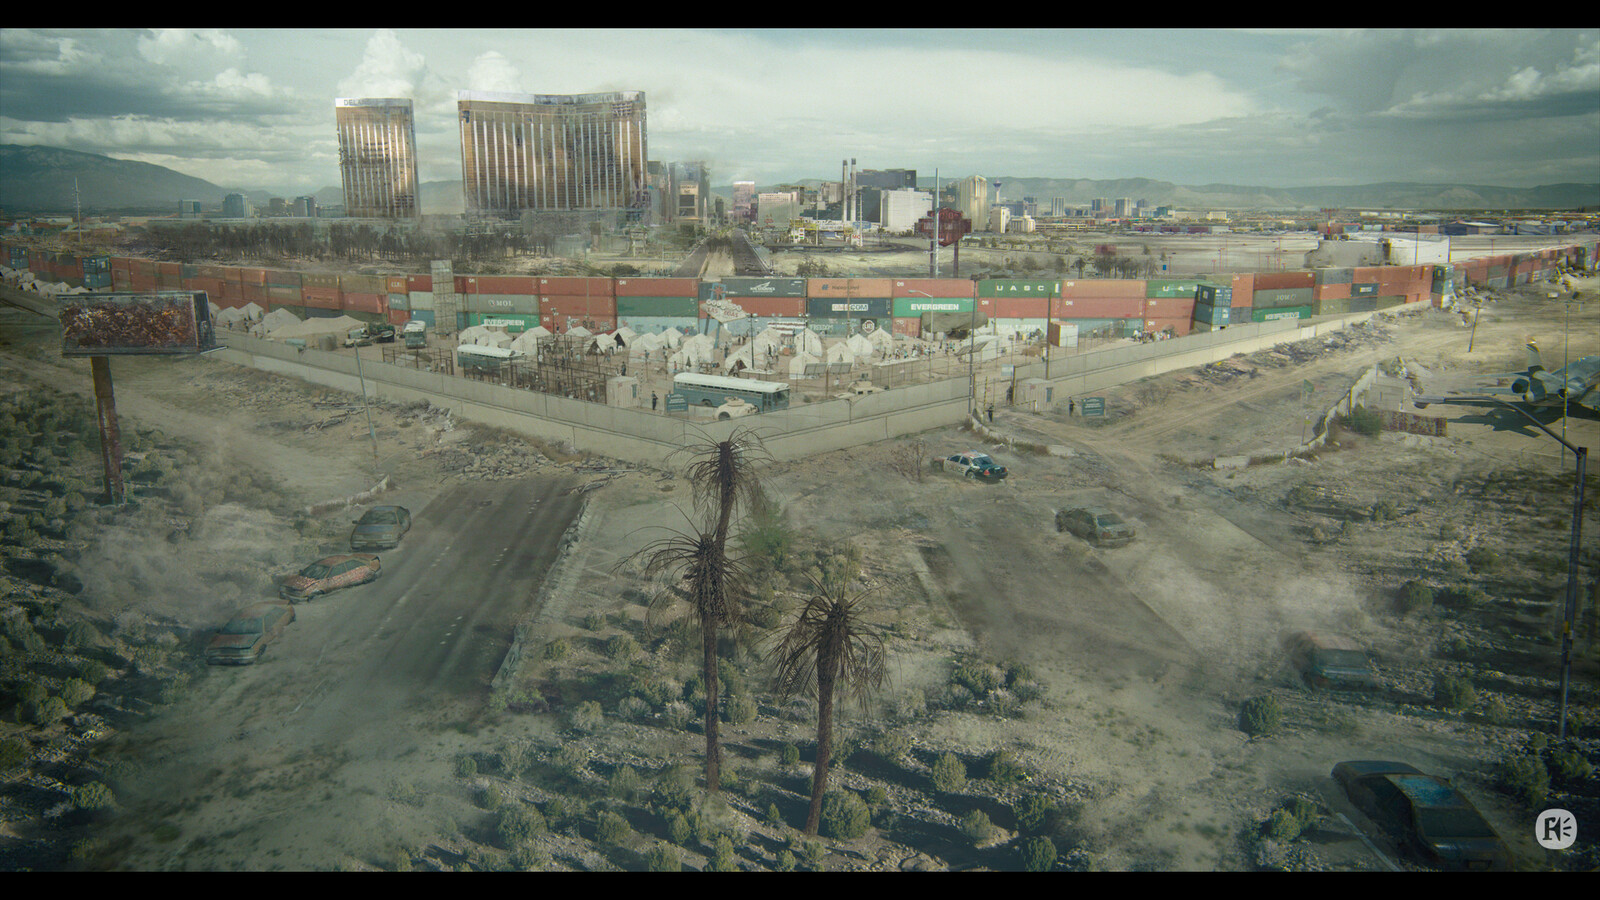 Establisher(wide ouside): Las Vegas strip Vis Dev, zombie containment area. by FD